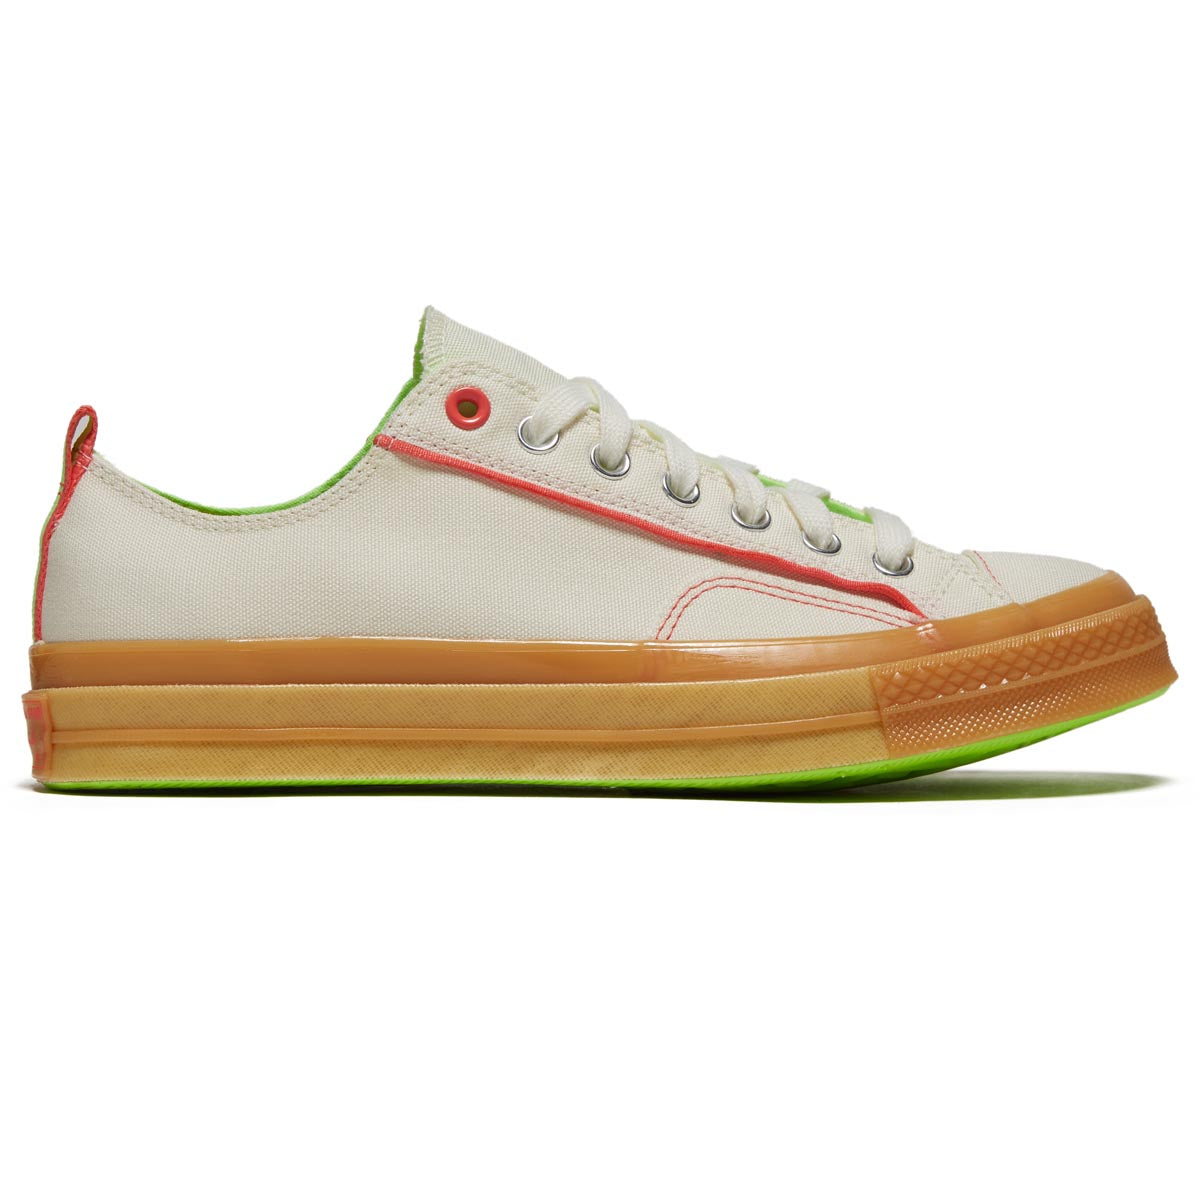 Converse Chuck 70 Ox Shoes - Egret/Gum/Watermelon Slushy image 1